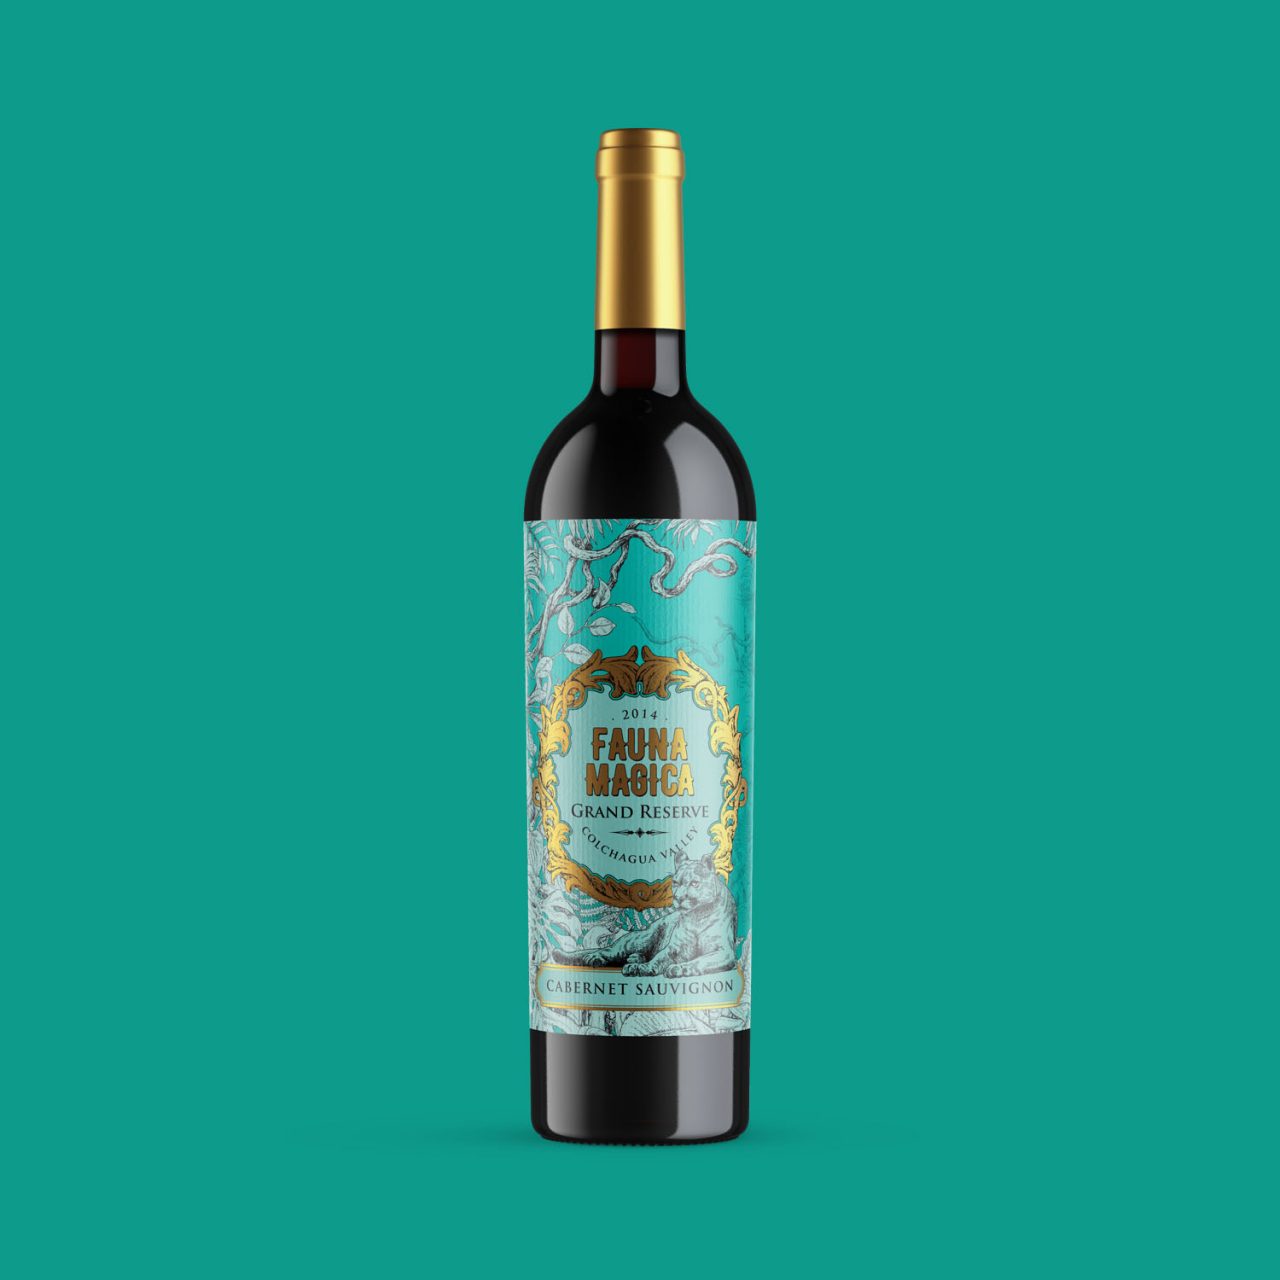 Wine Label Design For Cabarnet Sauvignon